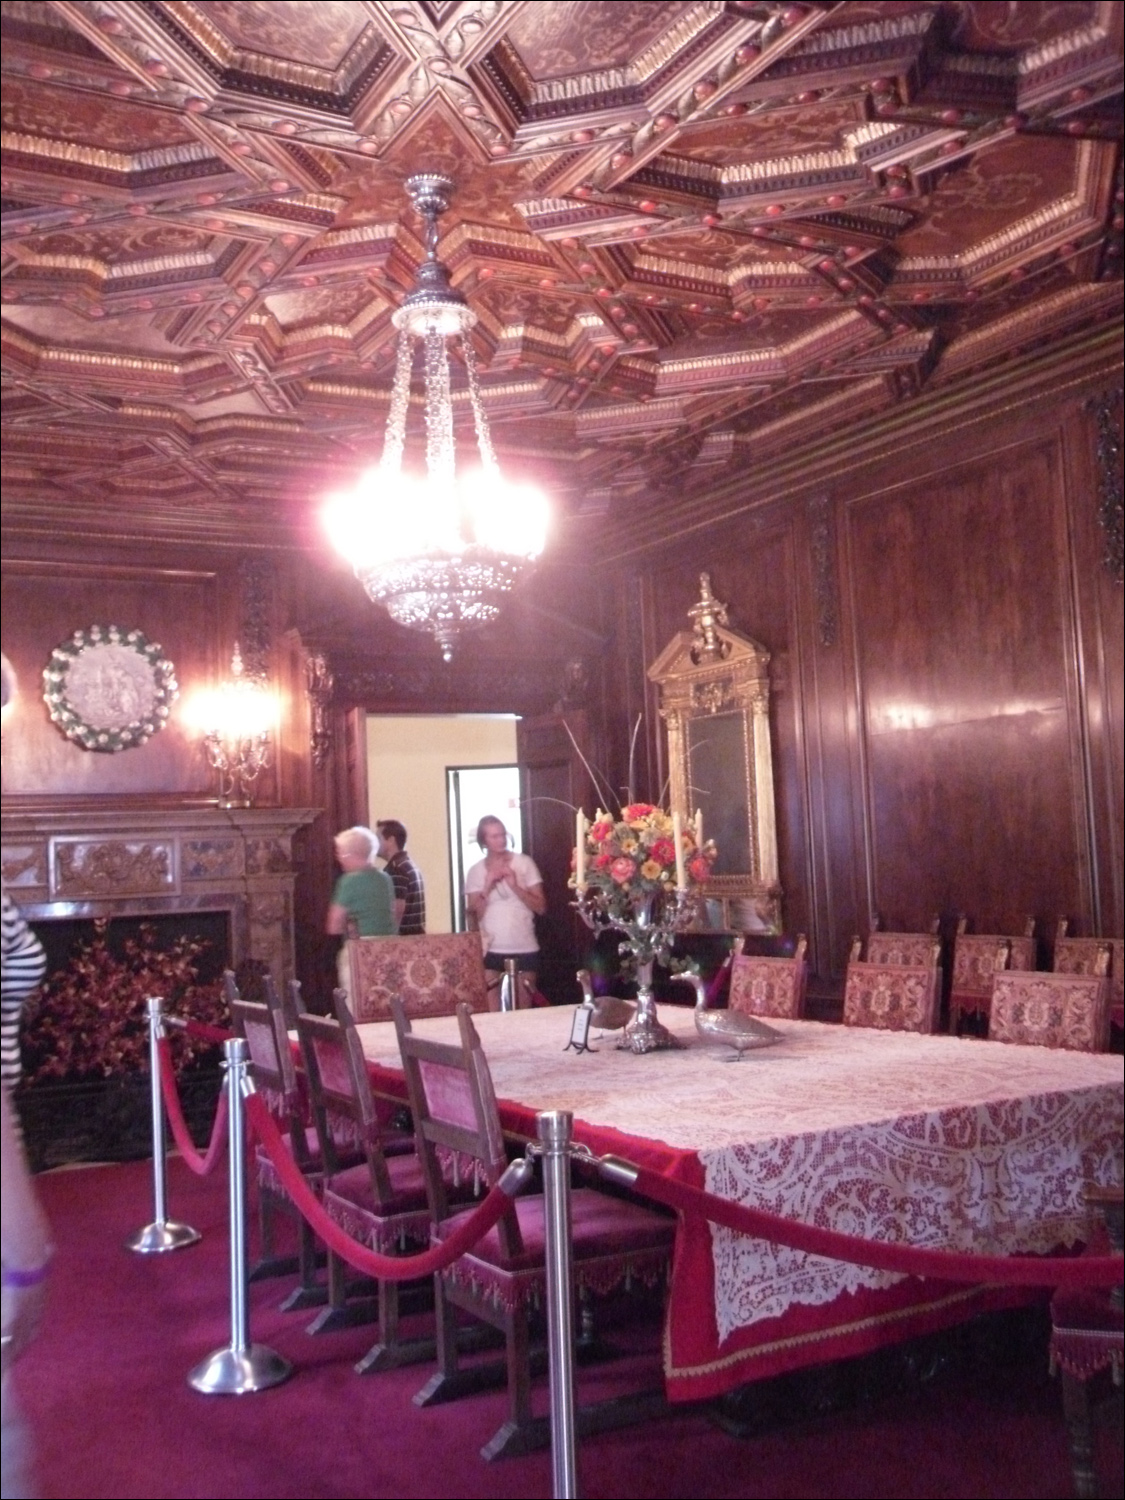 John & Mabel Ringling Museum-Ca' d'Zan mansion-formal dining room